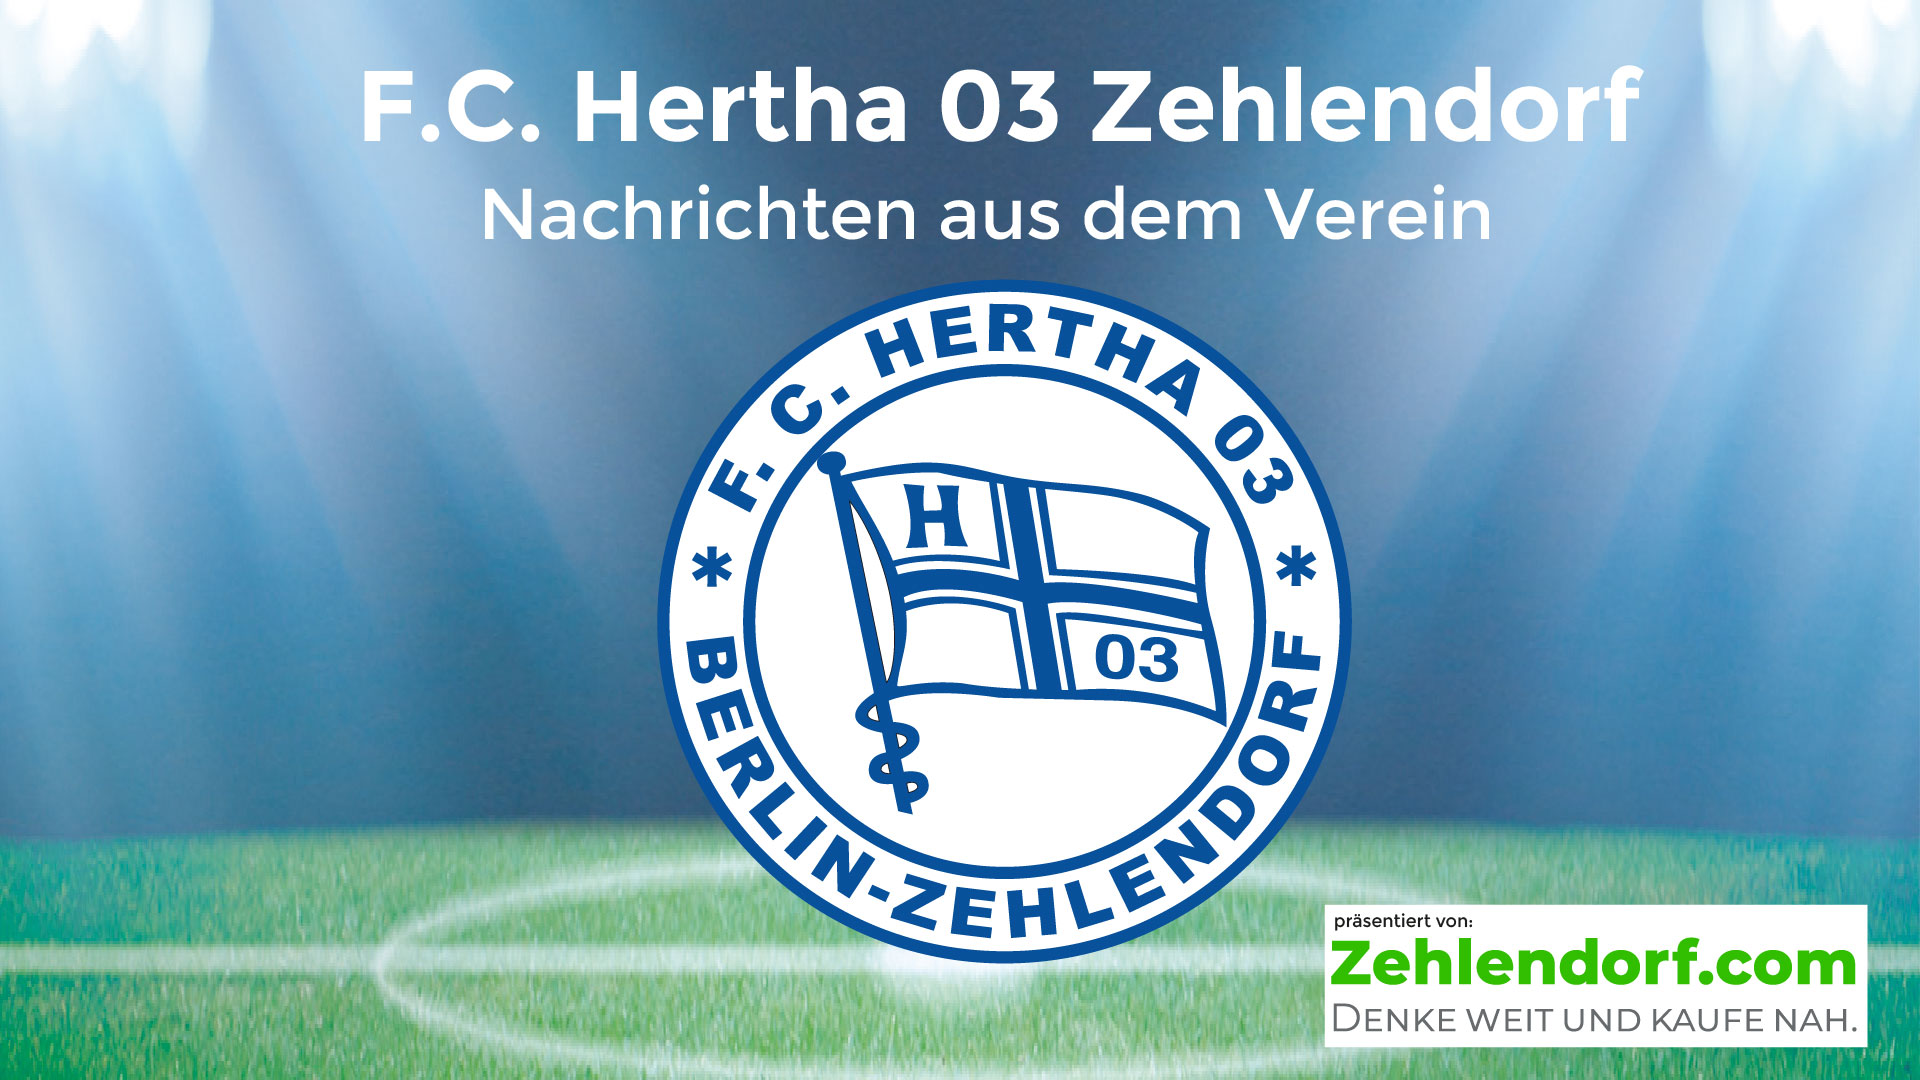 Hertha 03 und zehlendorf.com starten die nächste Runde!